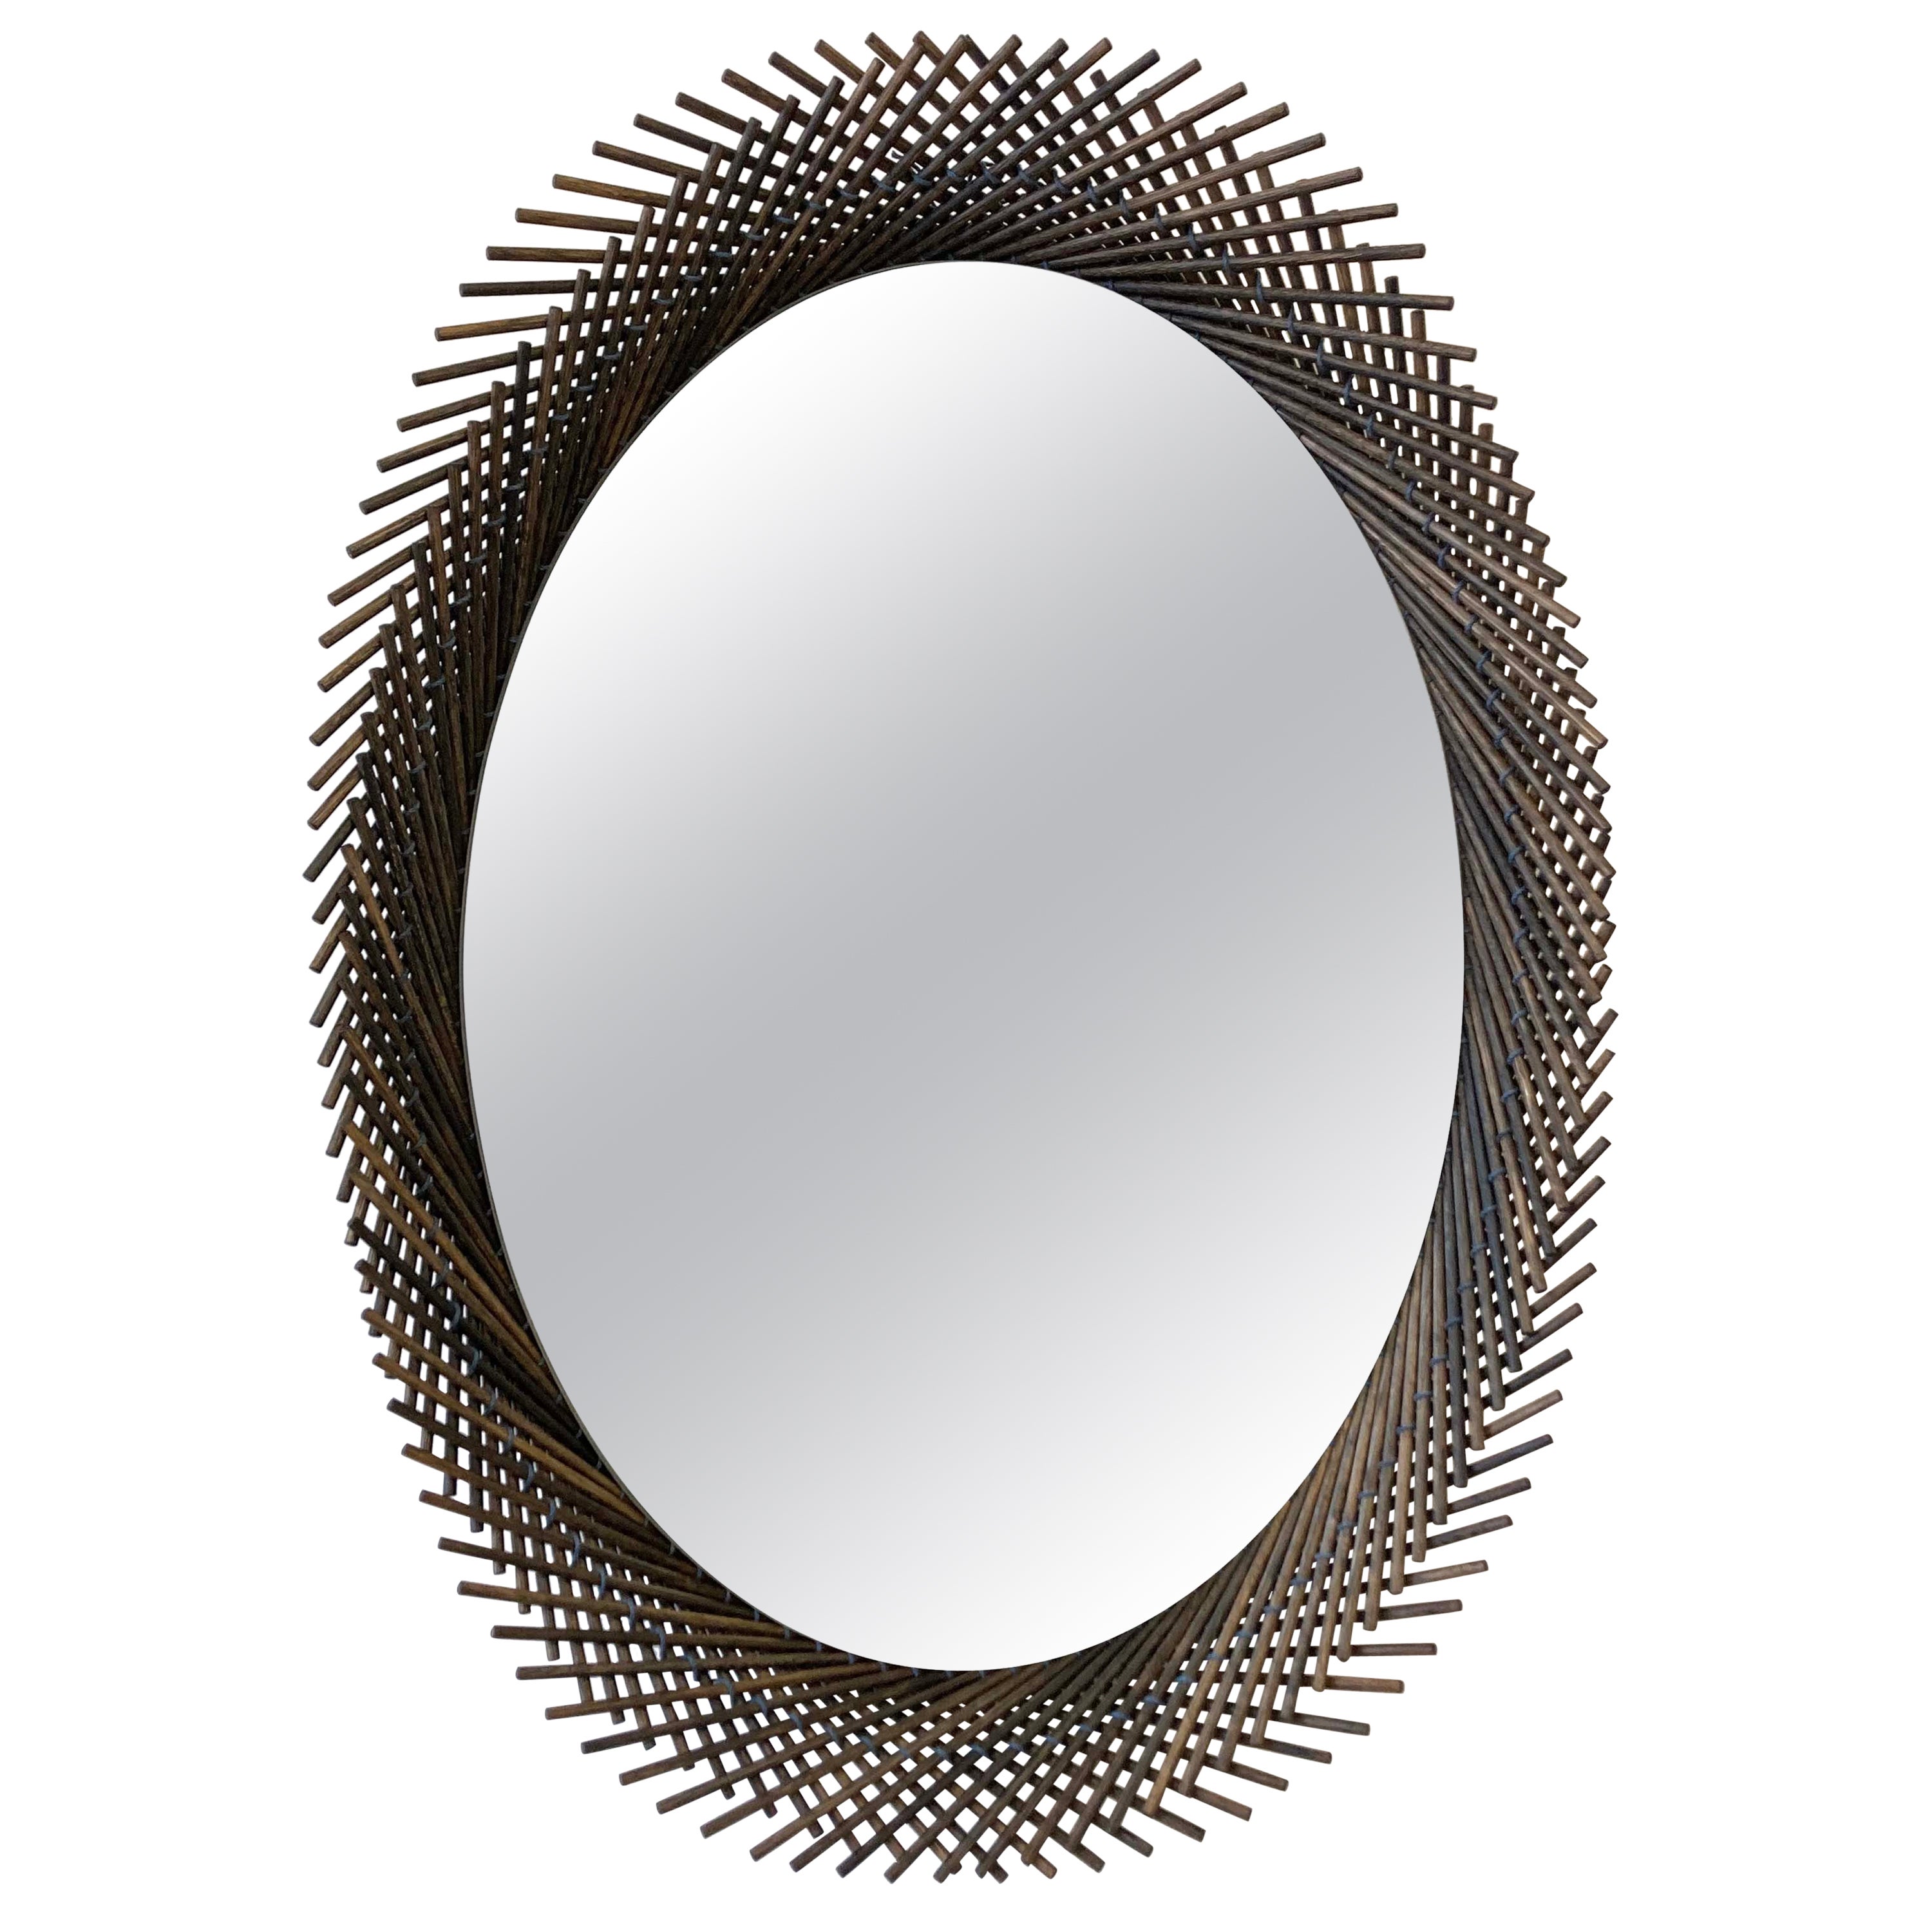 Mooda Spiegel Oval 28 / Oxidiertes OAK Wood, Klarer Spiegel von INDO-